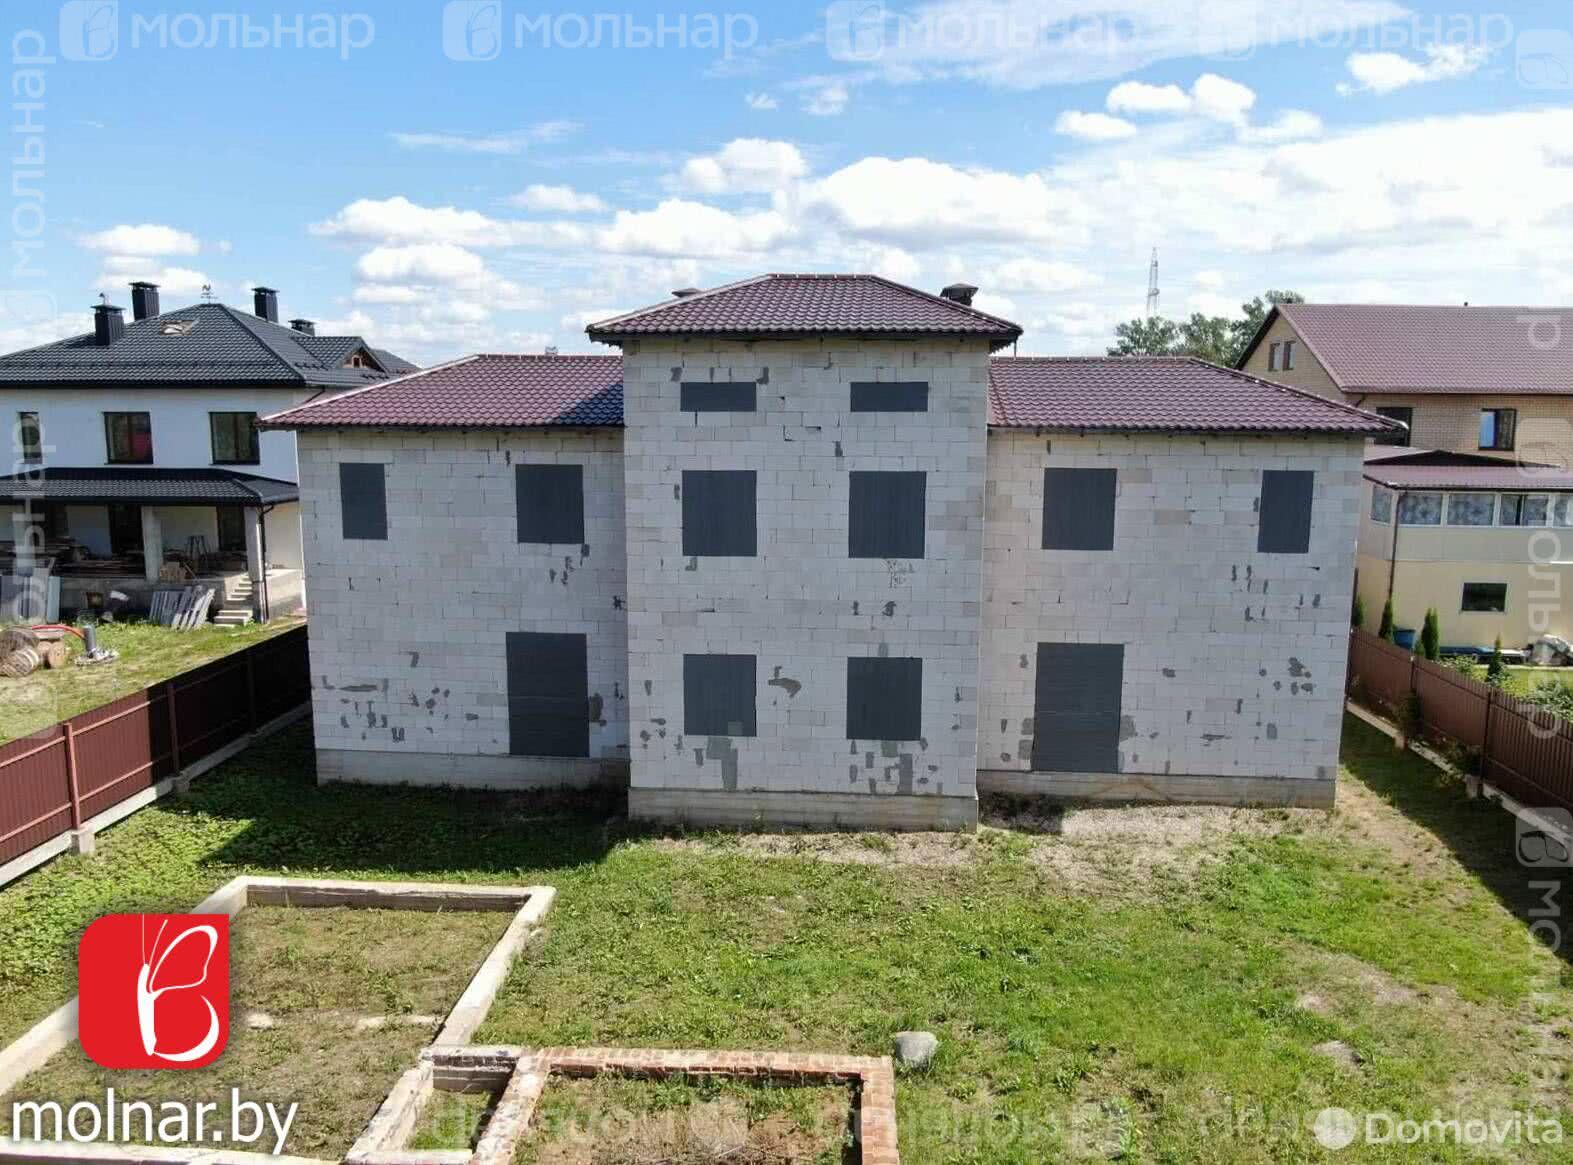 дом, Тарасово, ул. Славянская, стоимость продажи 385 992 р.